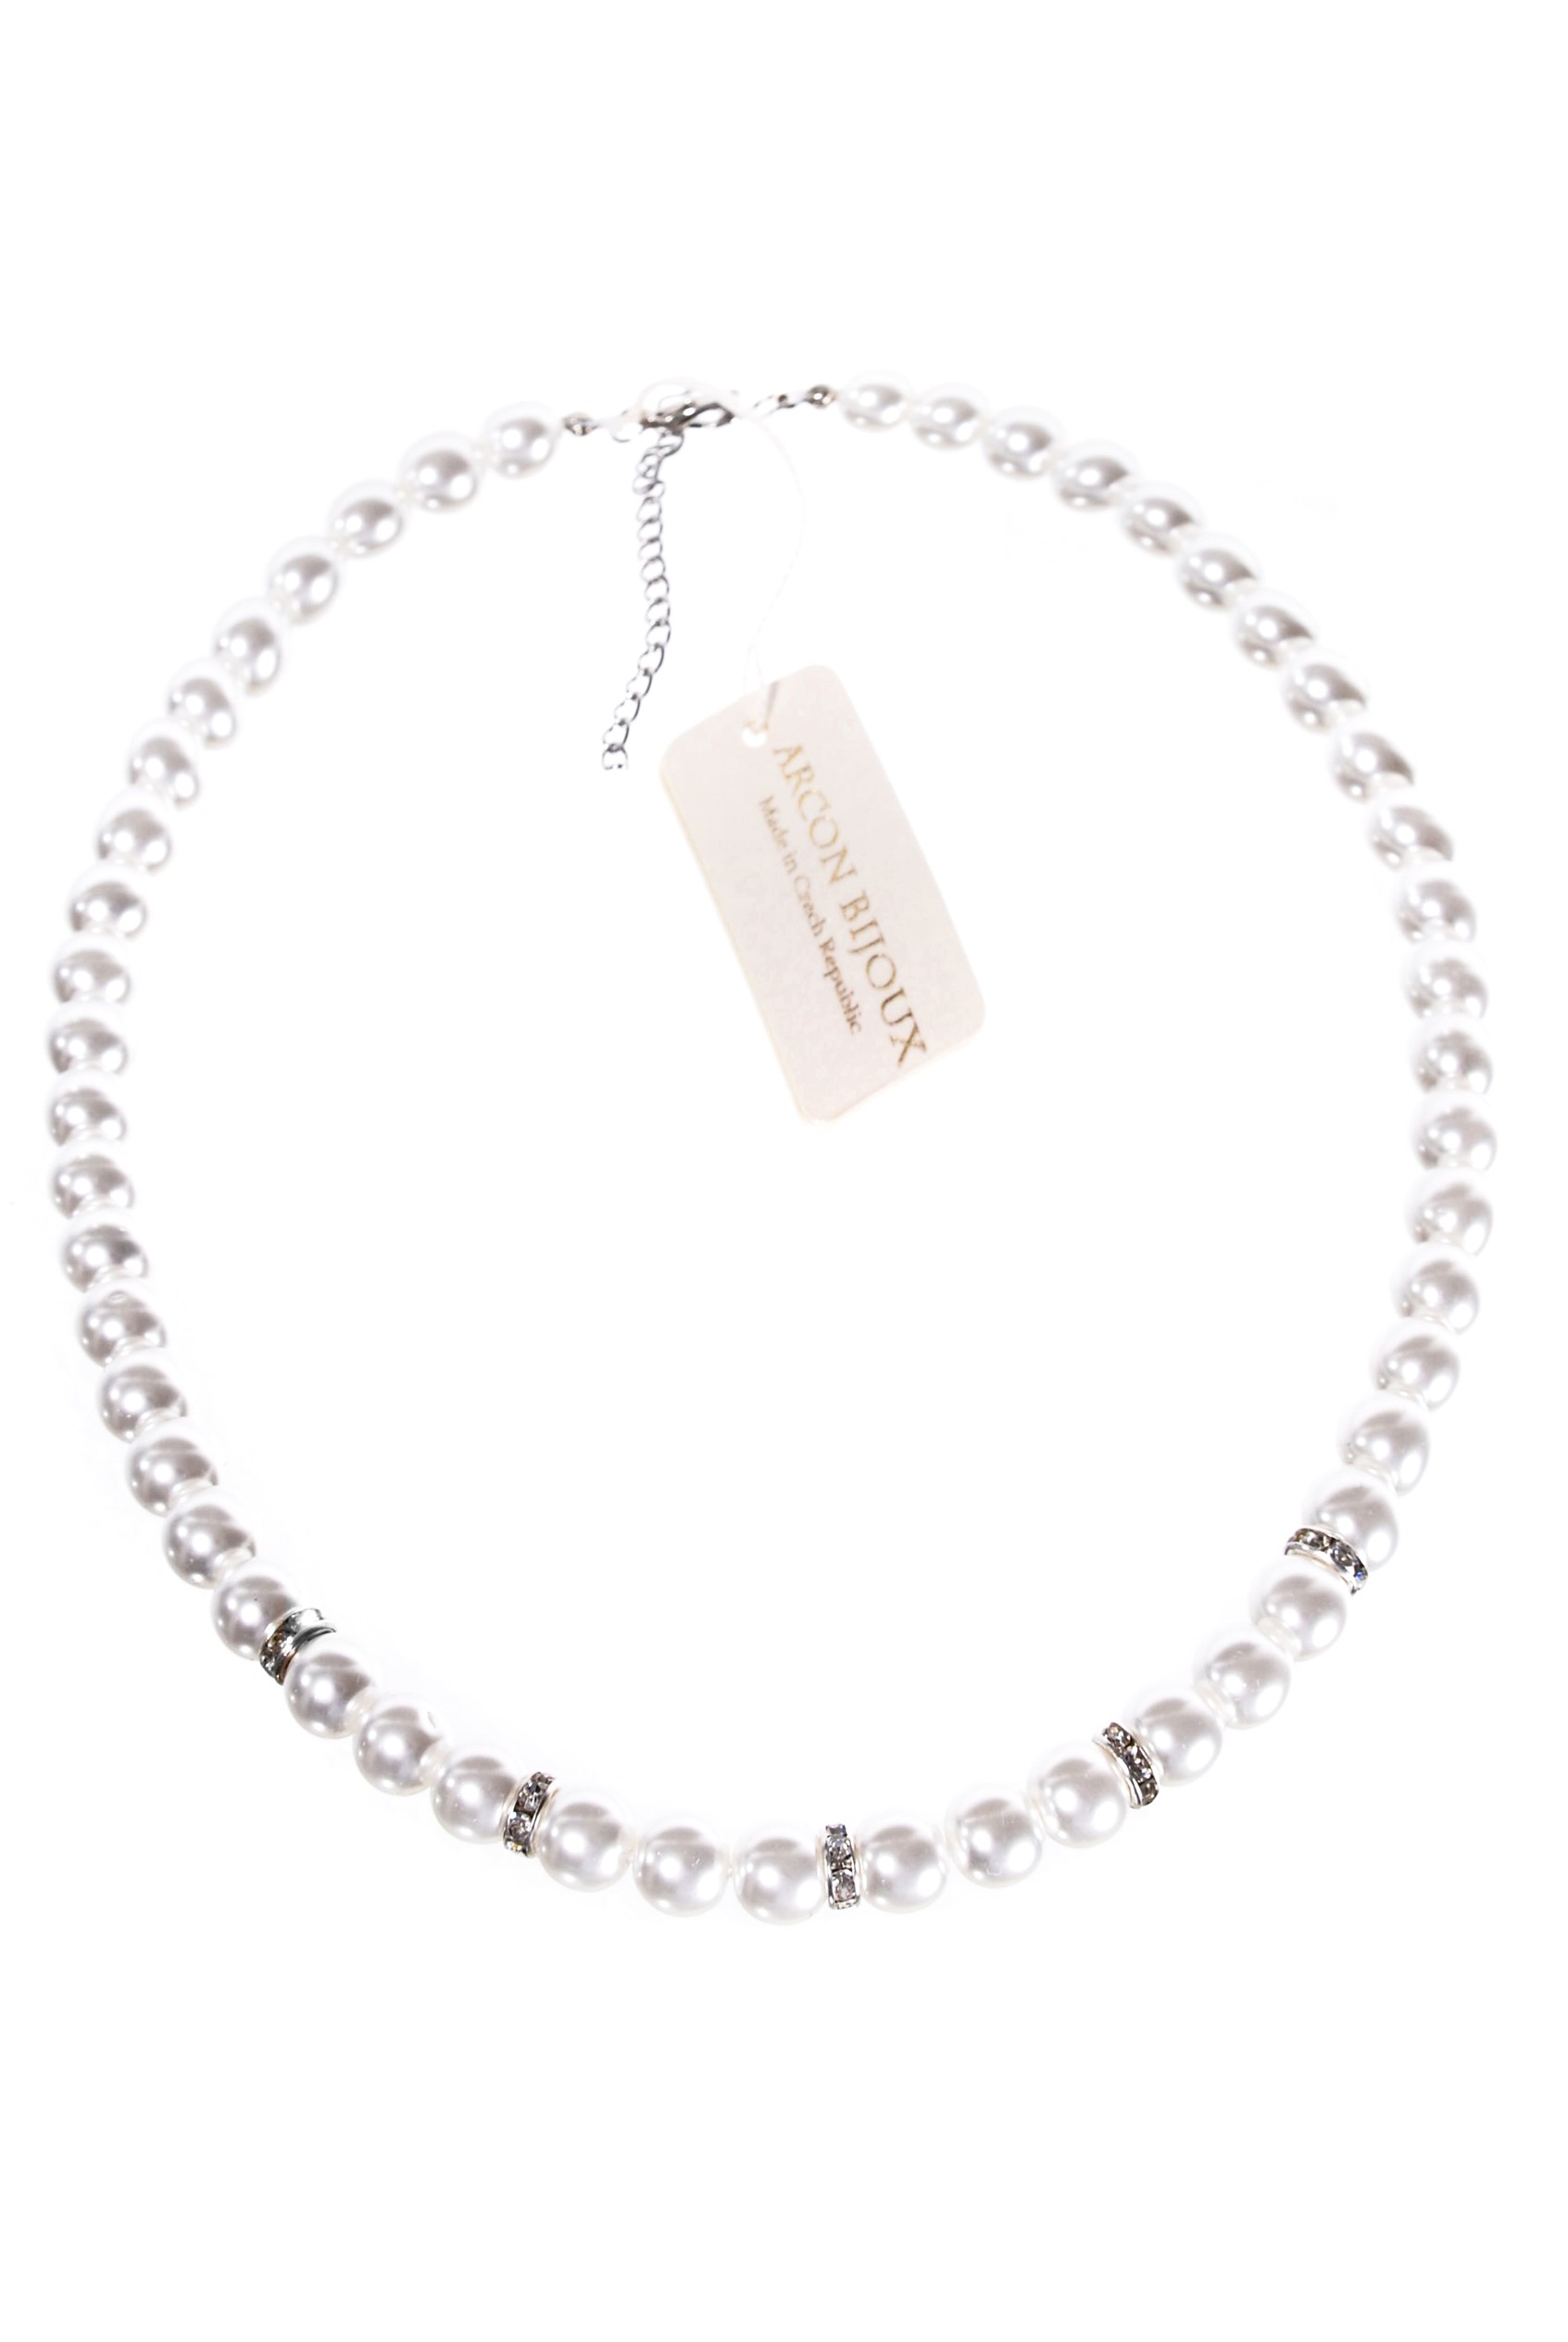 Bílý náhrdelník z perliček H922-209